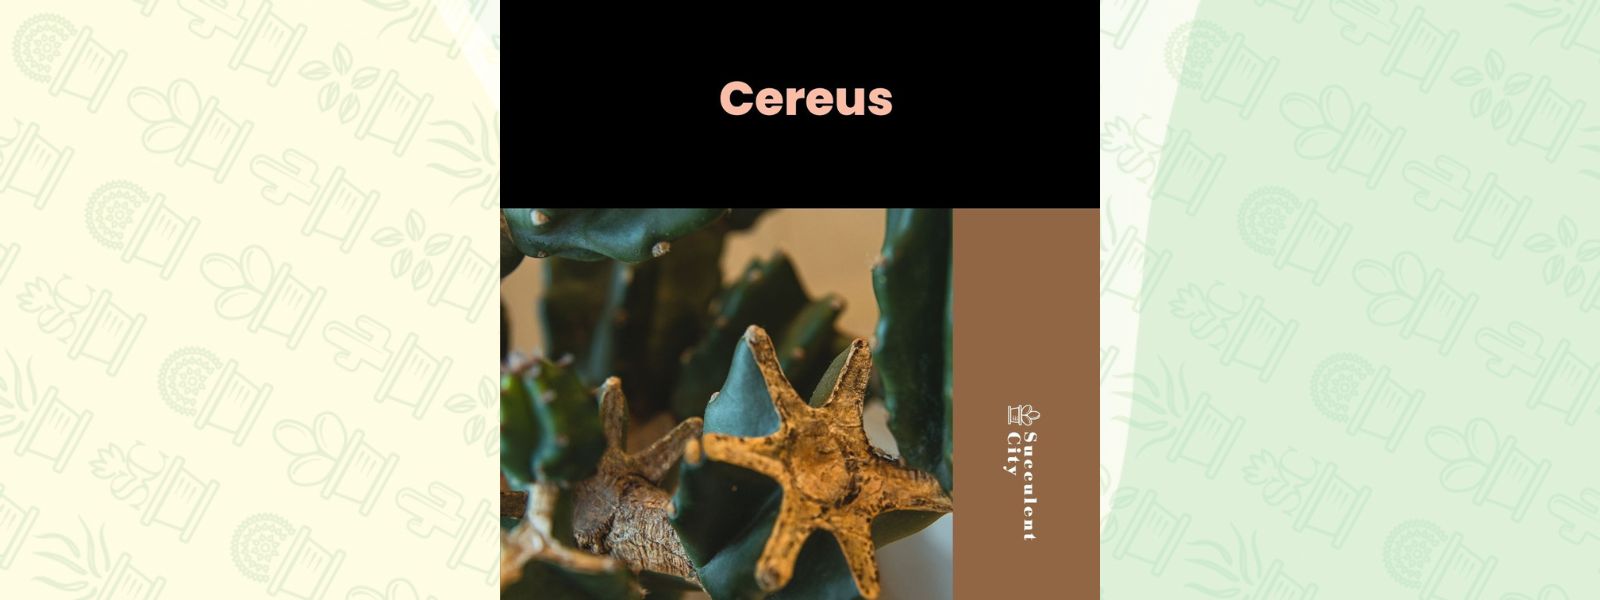 El género “Cereus”.